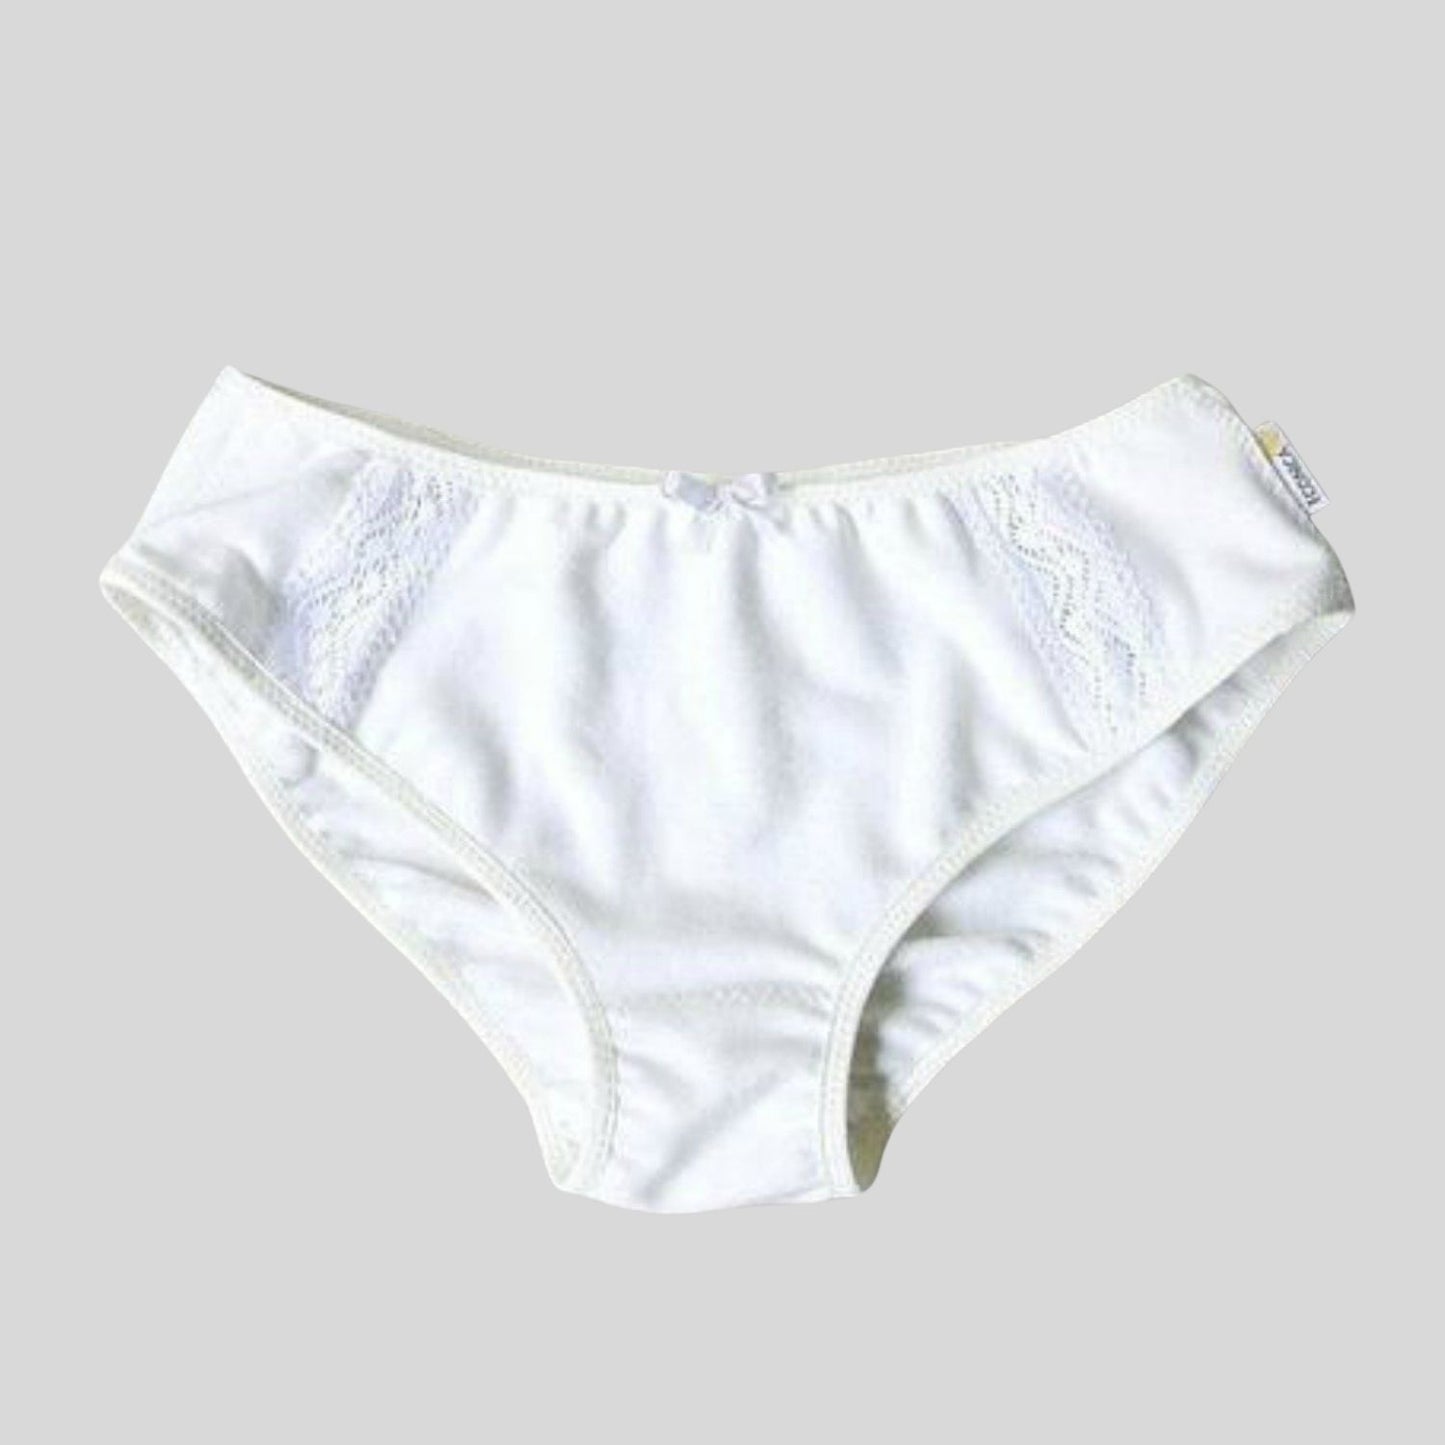 Women's Cotton Bikini Panty, White 3 Pack